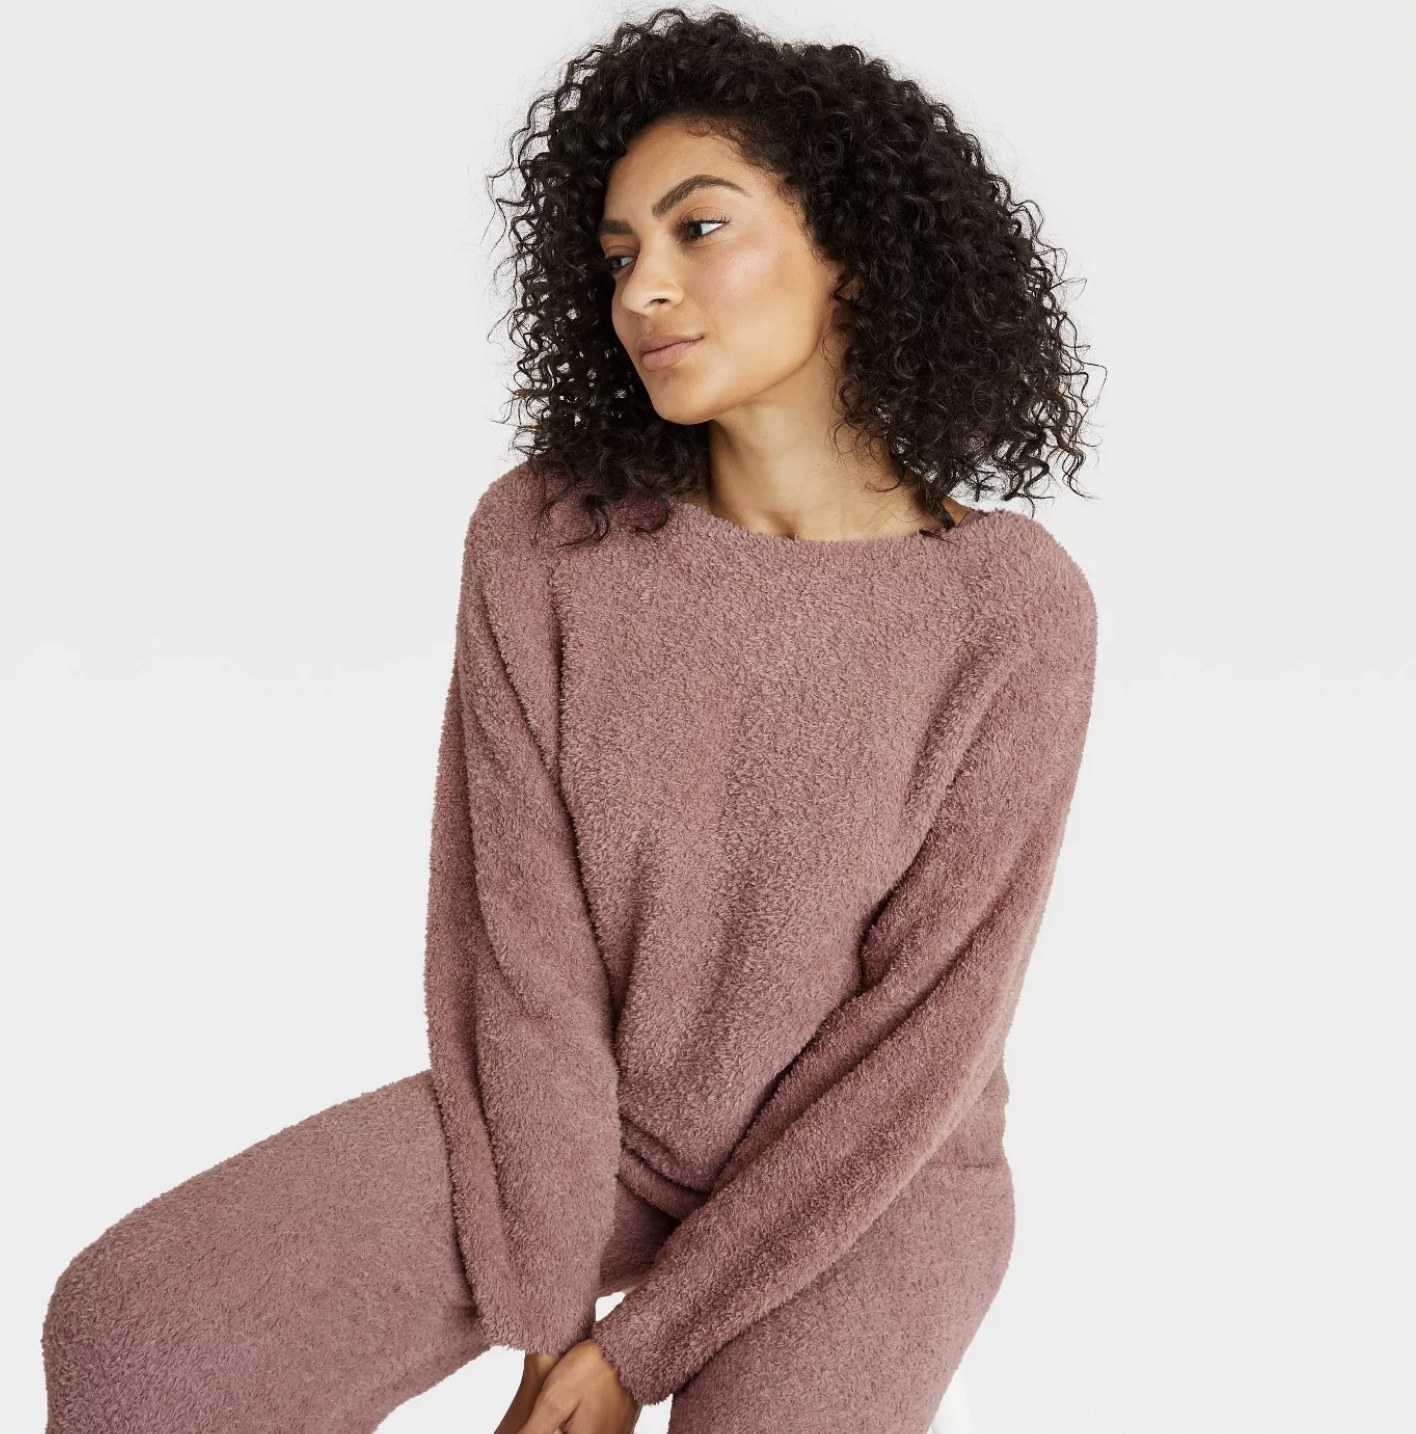 a model in a fuzzy pink sweatshirt